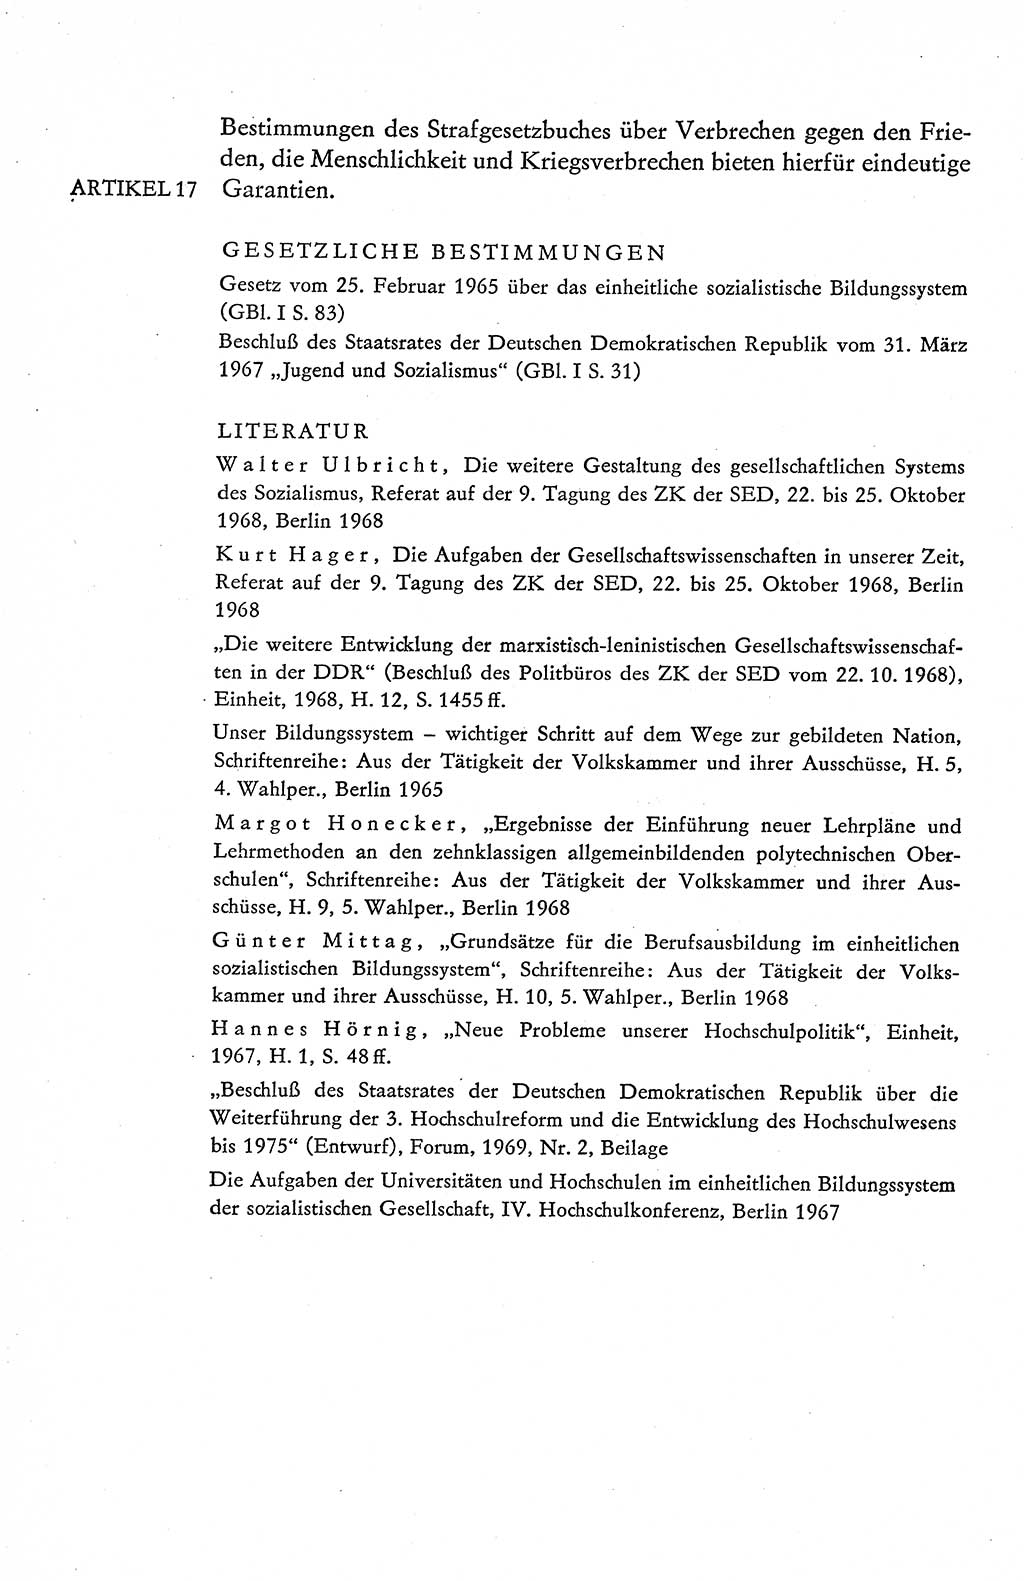 Verfassung der Deutschen Demokratischen Republik (DDR), Dokumente, Kommentar 1969, Band 1, Seite 404 (Verf. DDR Dok. Komm. 1969, Bd. 1, S. 404)